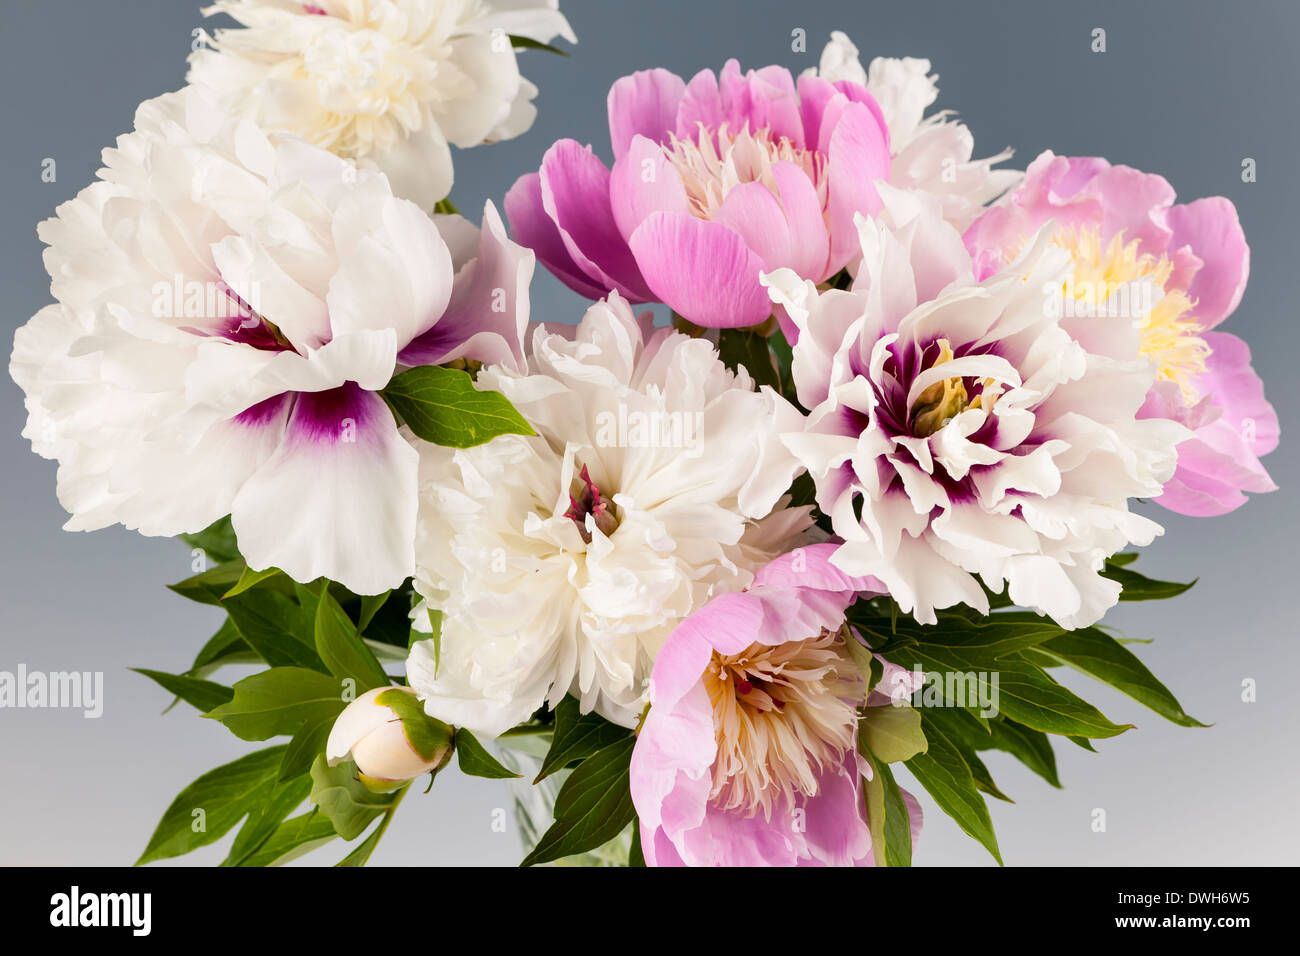 Rosa und Weiße Pfingstrose Blumenstrauß auf grauem Hintergrund, Studio gedreht Stockfoto